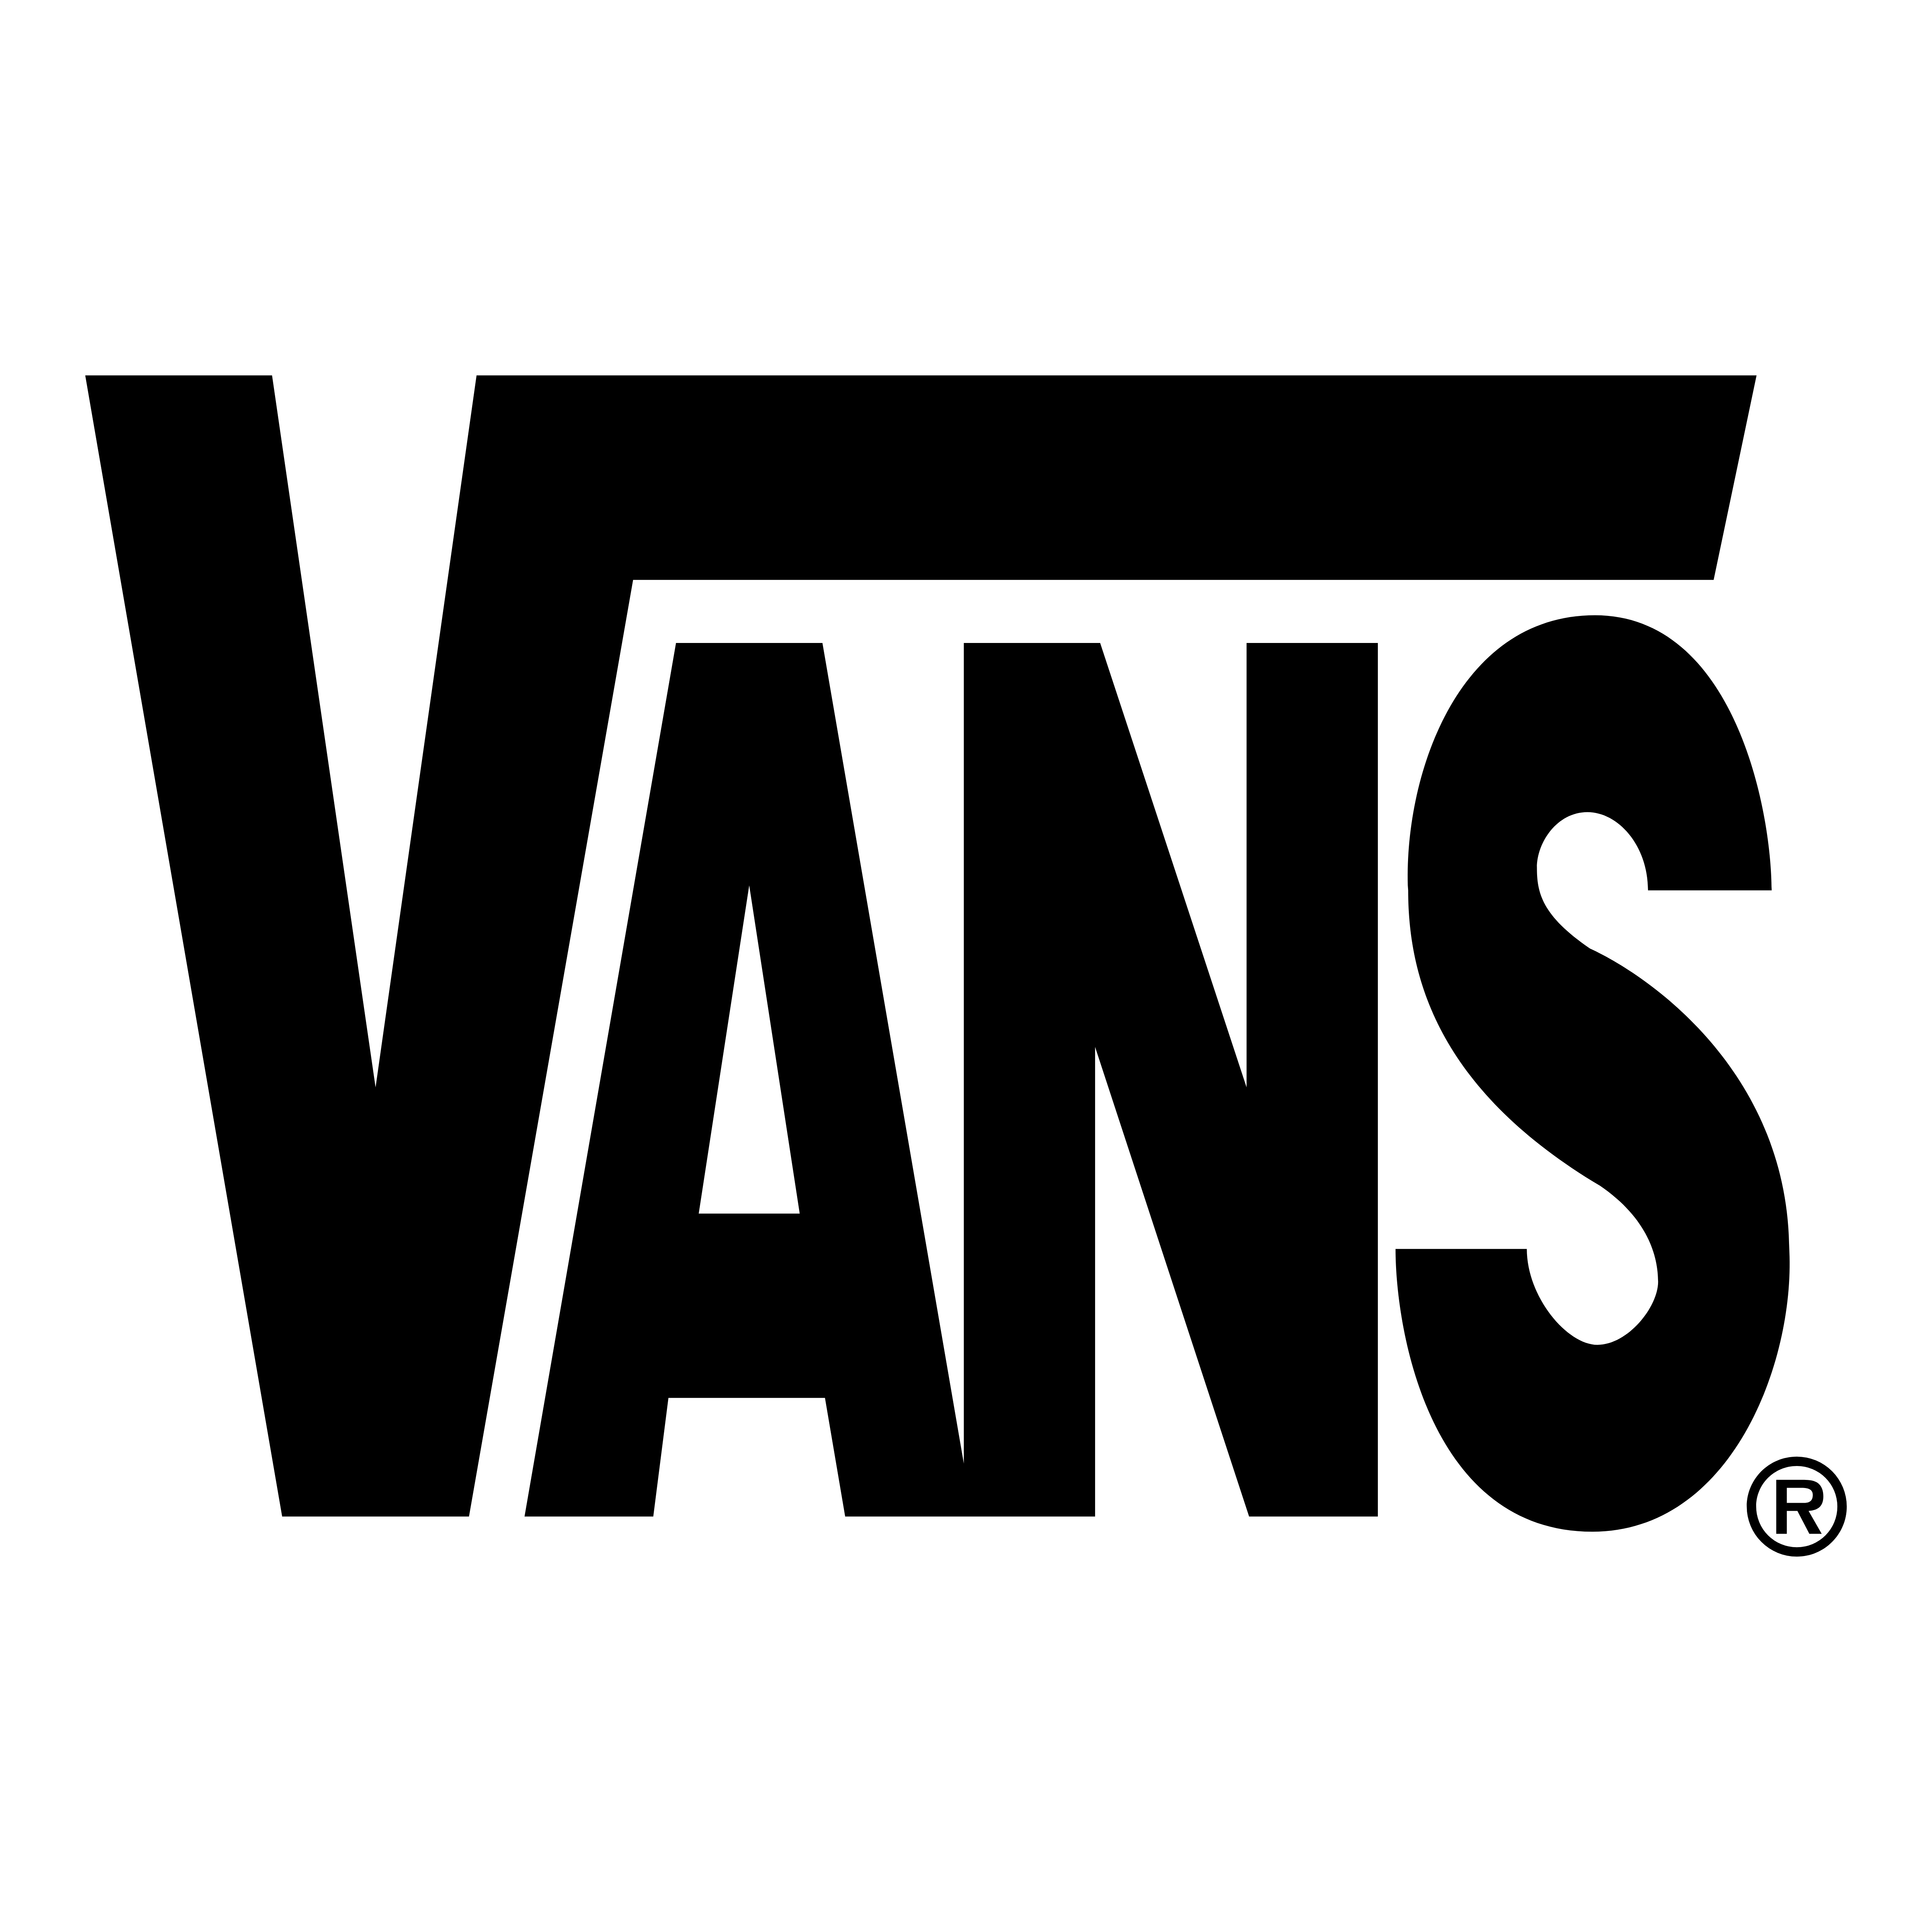 vans logo black and white